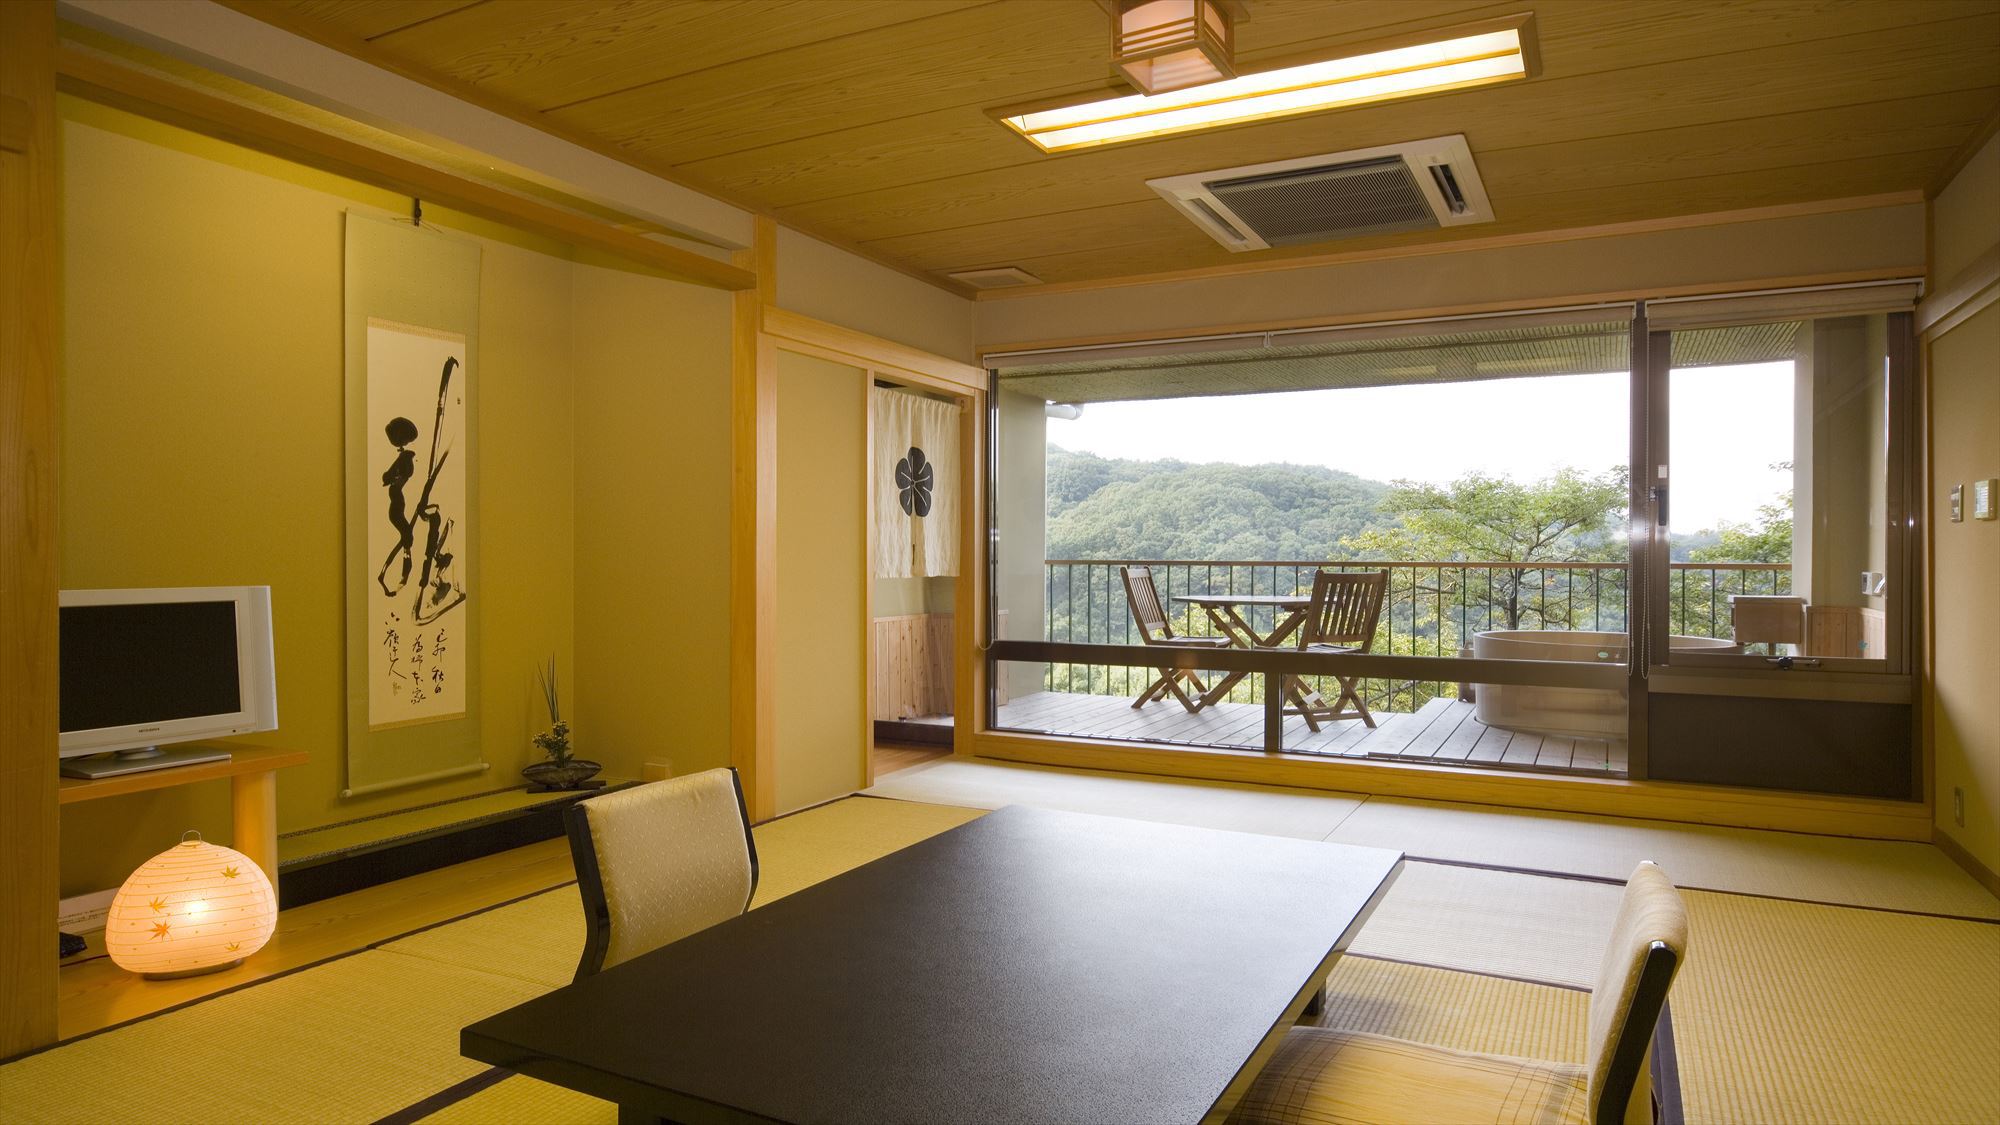 静かな客室。奈良のガイドブックも置いてあります